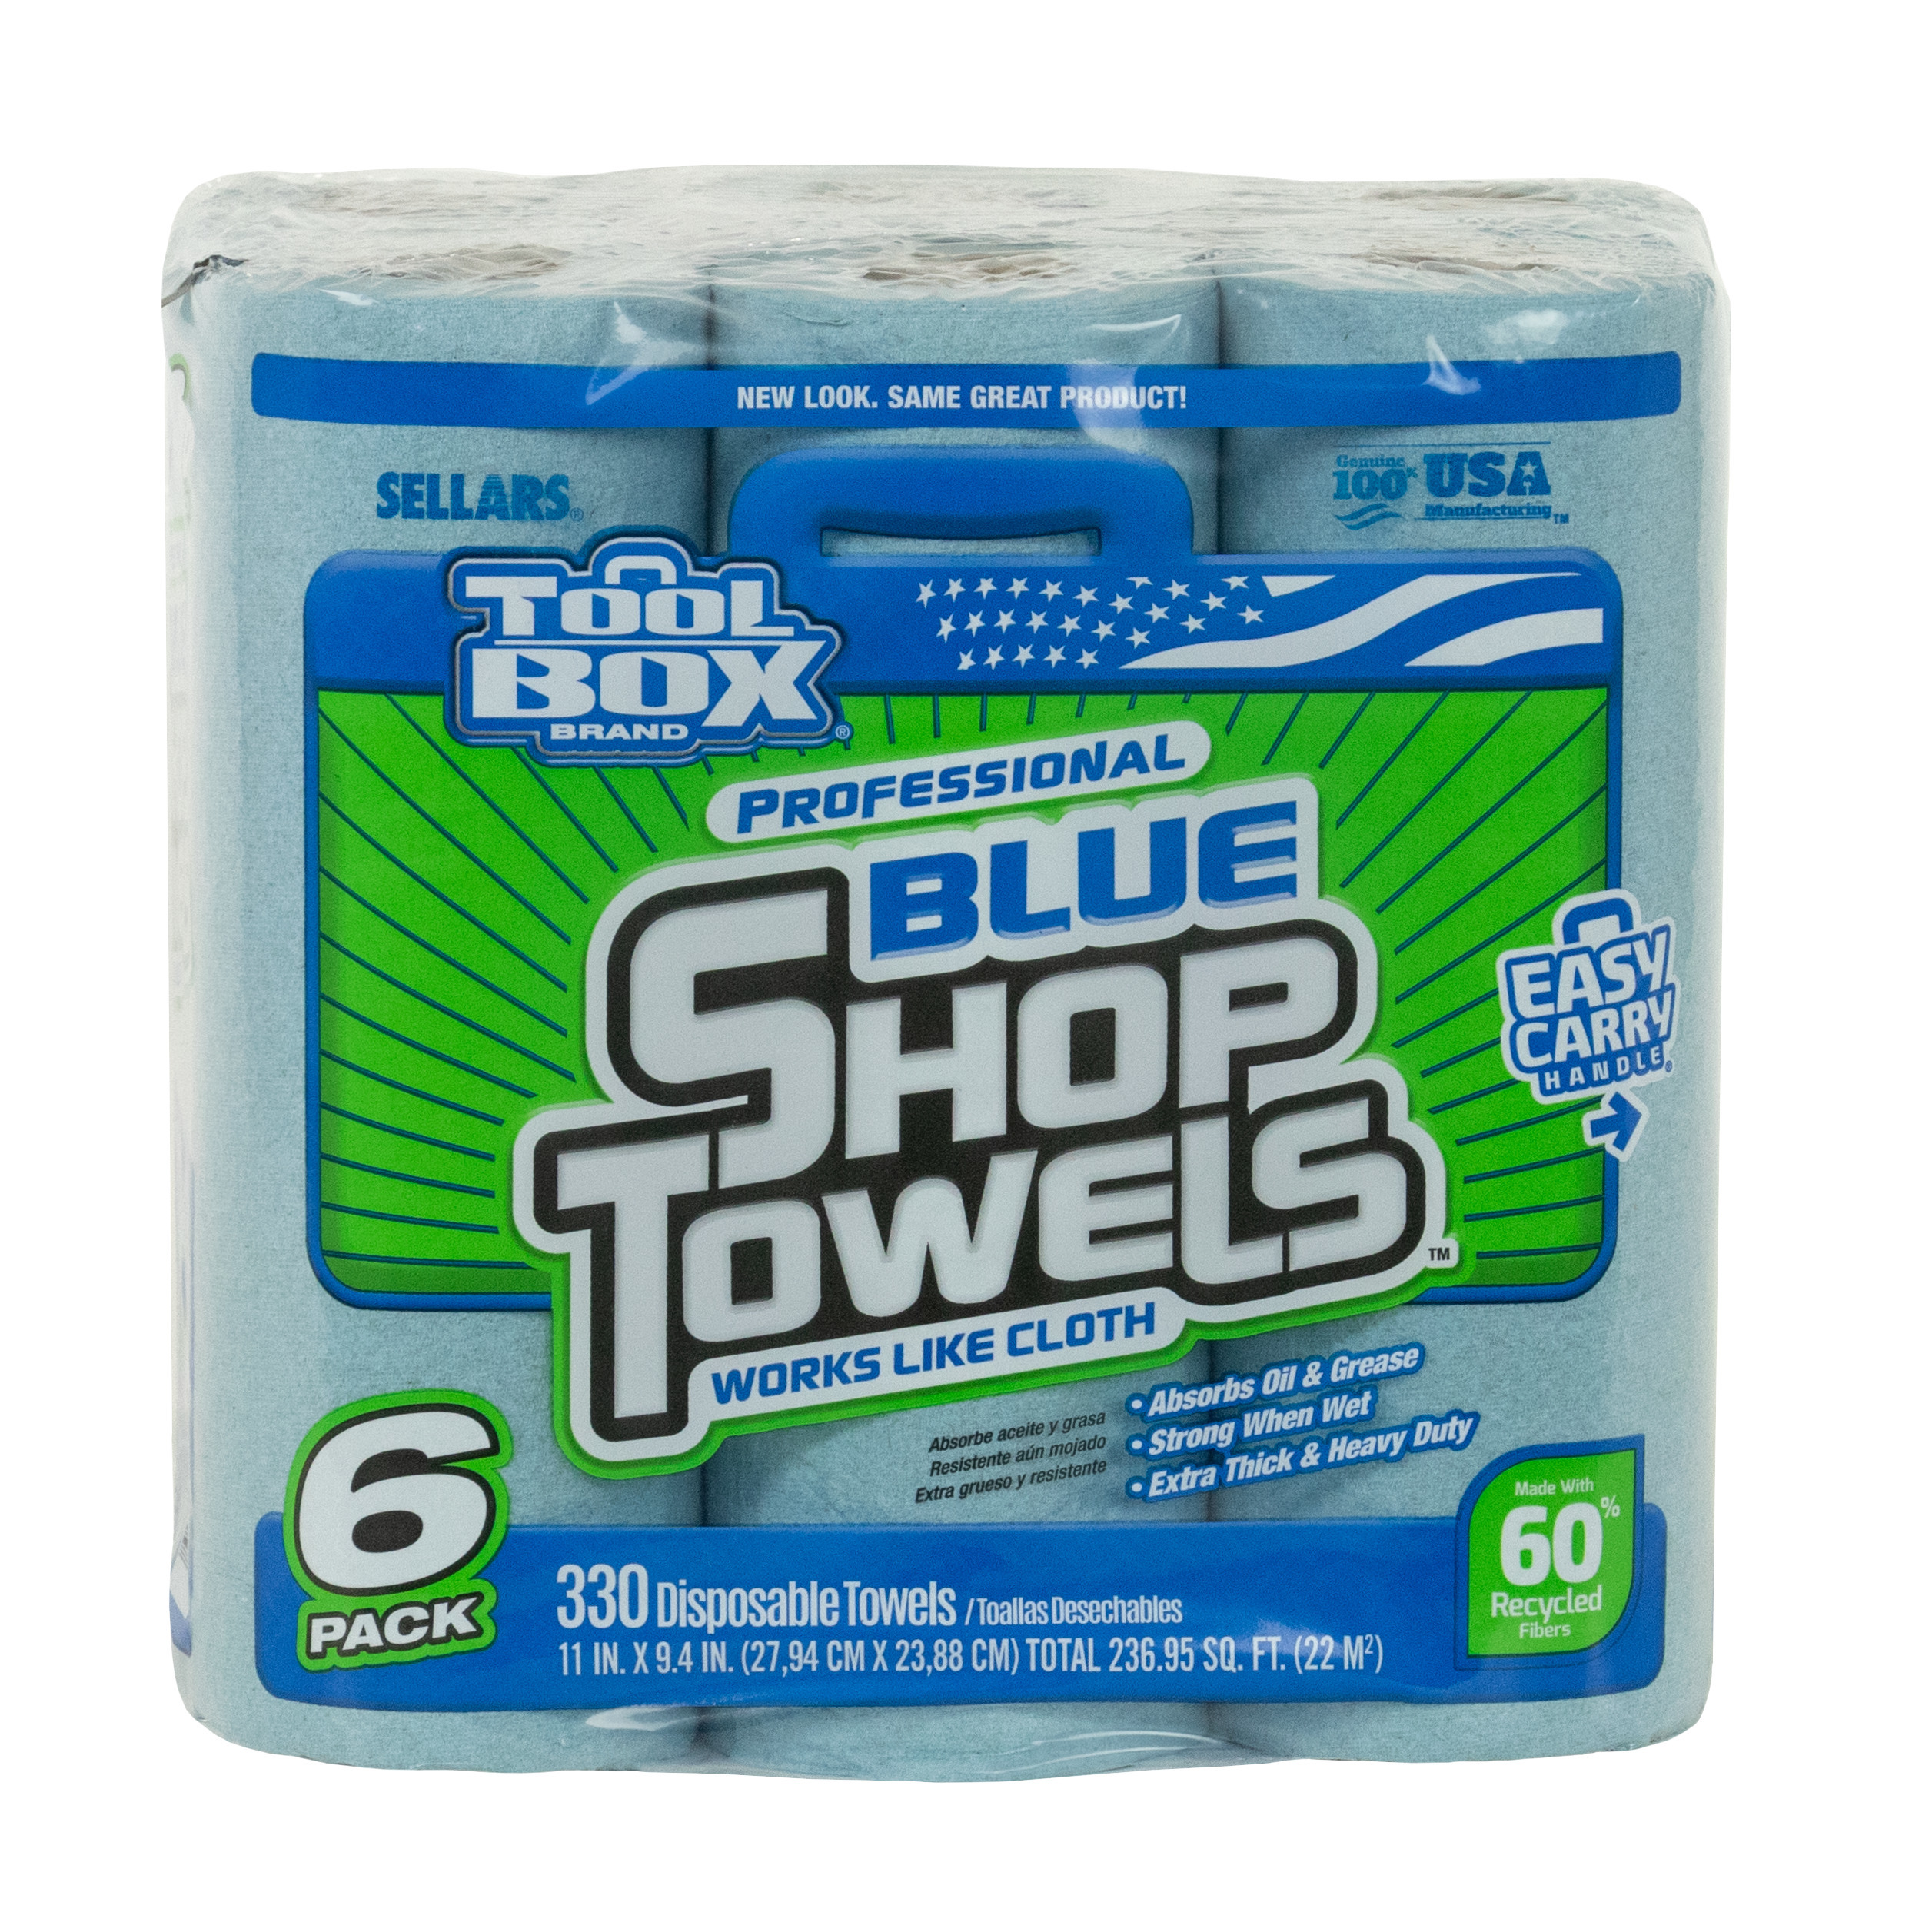 Sellars 6-Pack toolbox z400 shop towel rolls